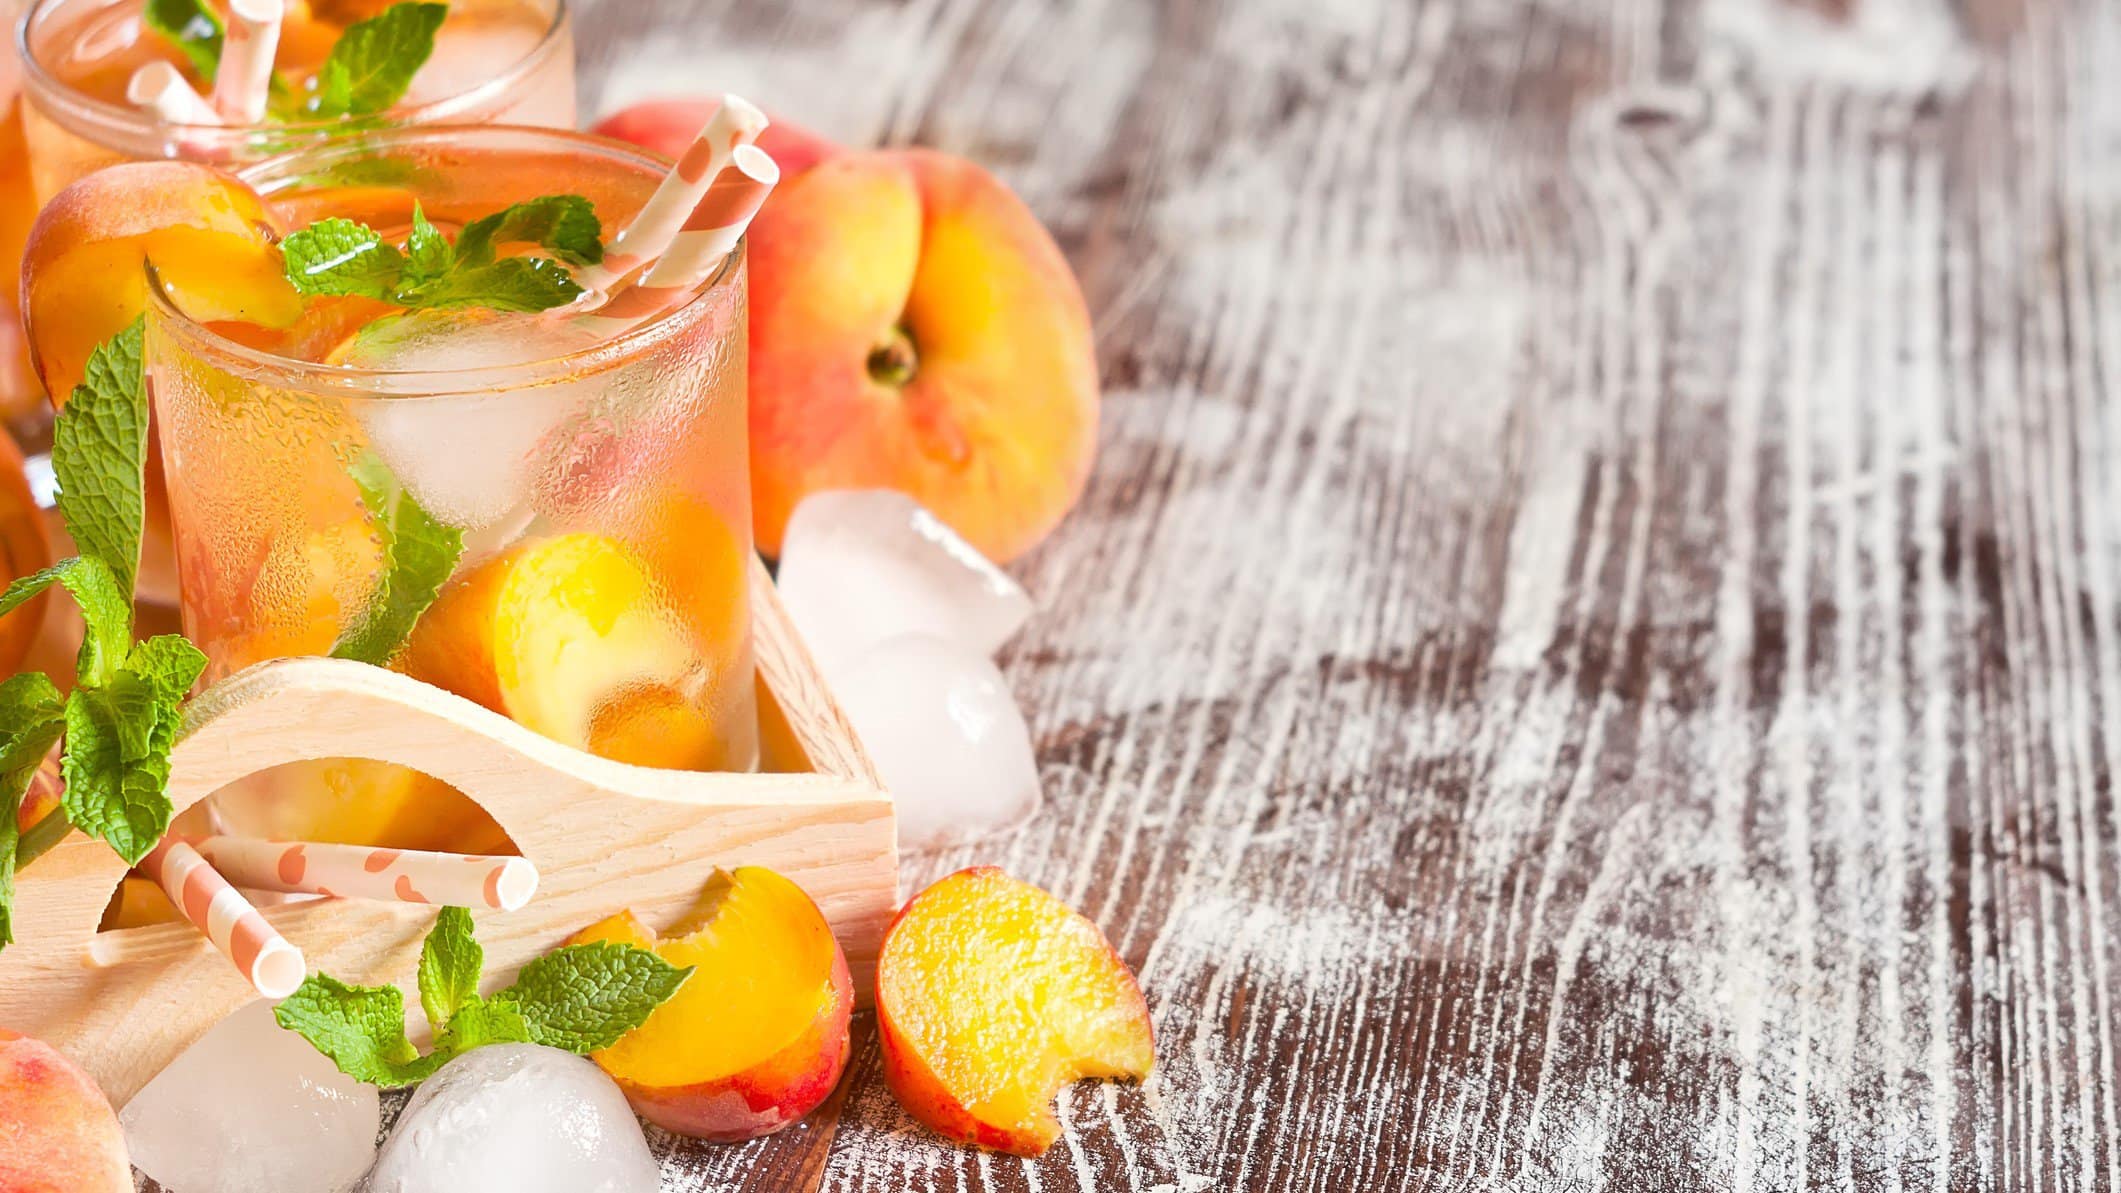 Pfirsich-Bowle mit Eis und Früchten in Gläsern auf Holzuntergrund.